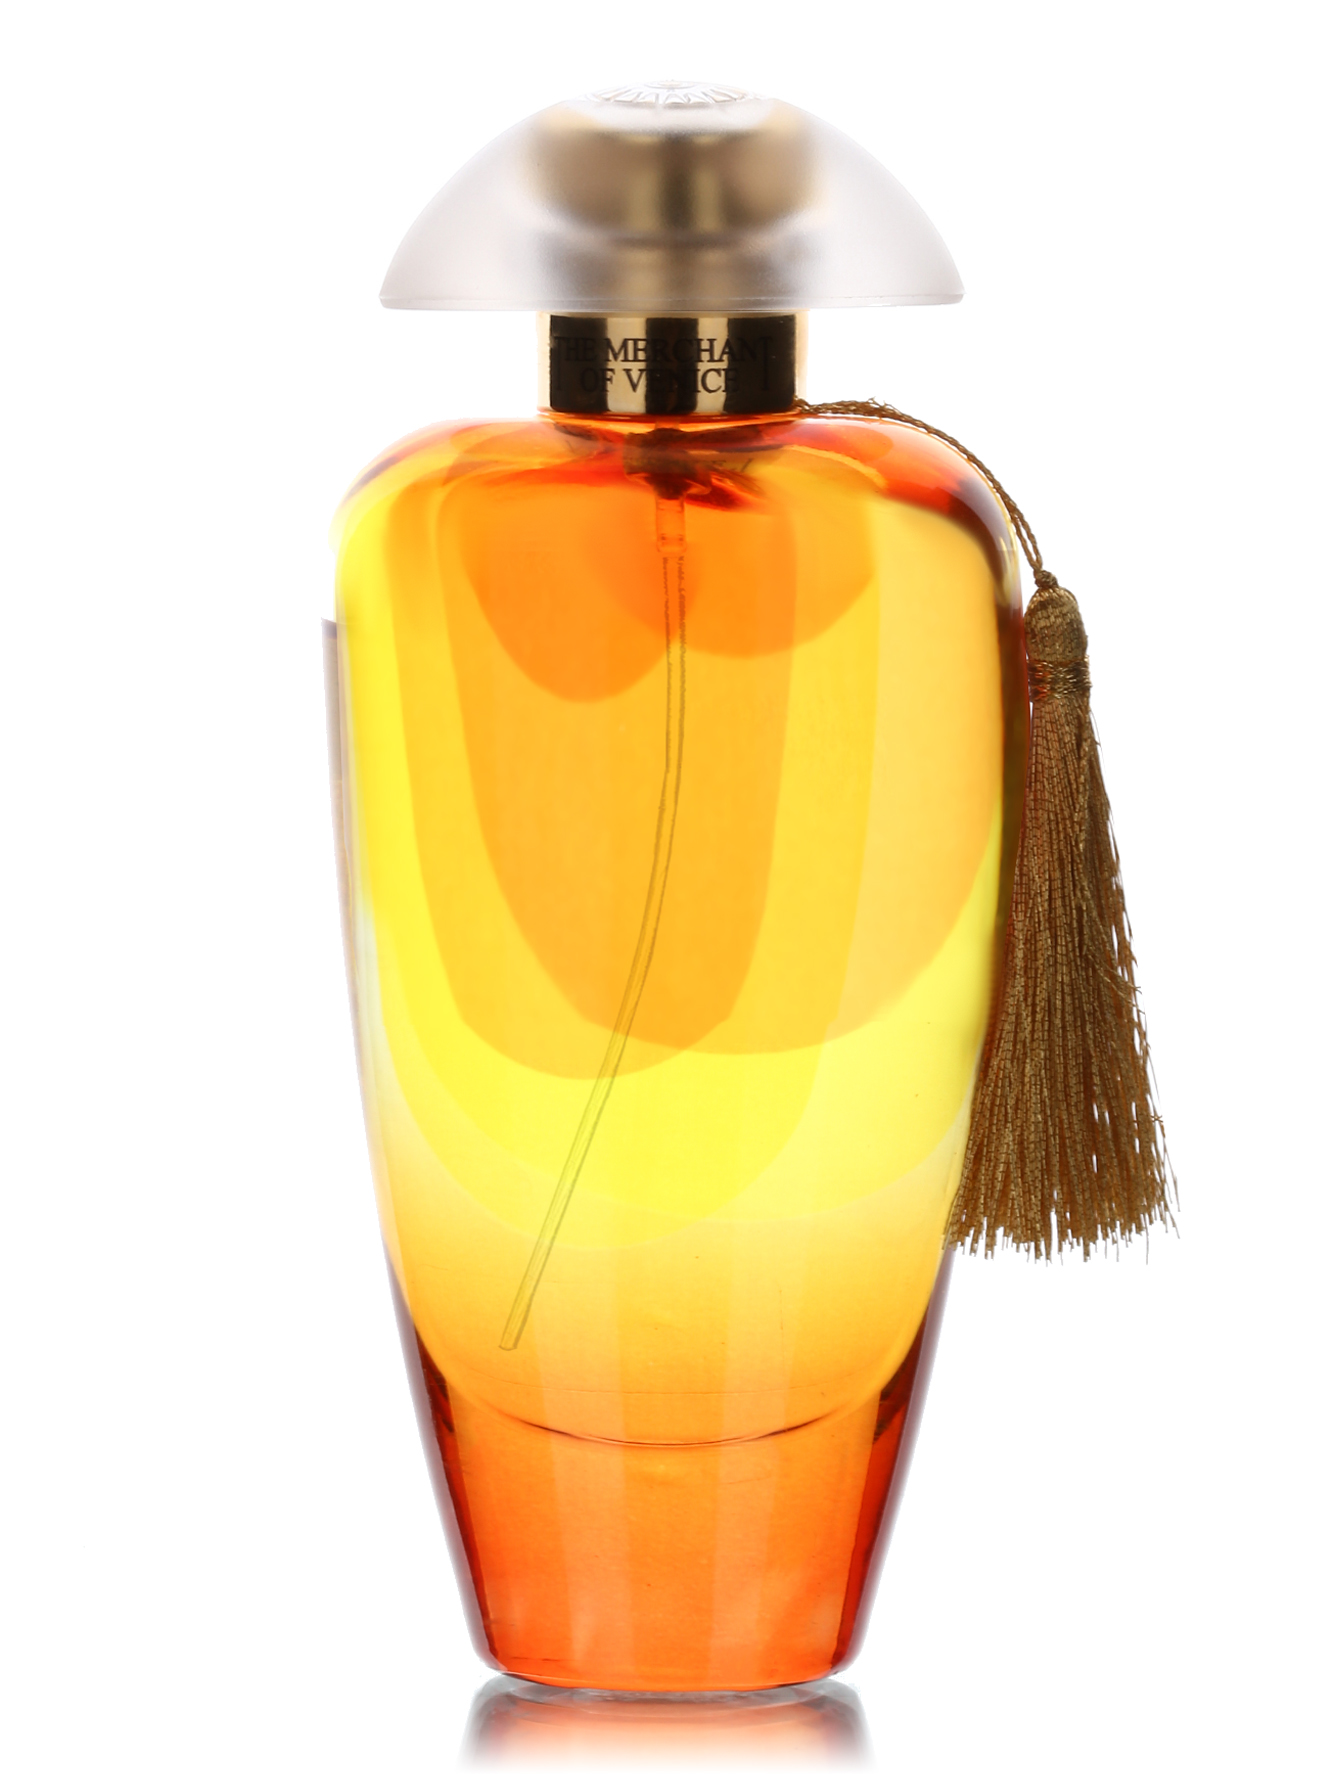  Парфюмированная вода - Noble potion, Murano Collection, 50ml - Общий вид